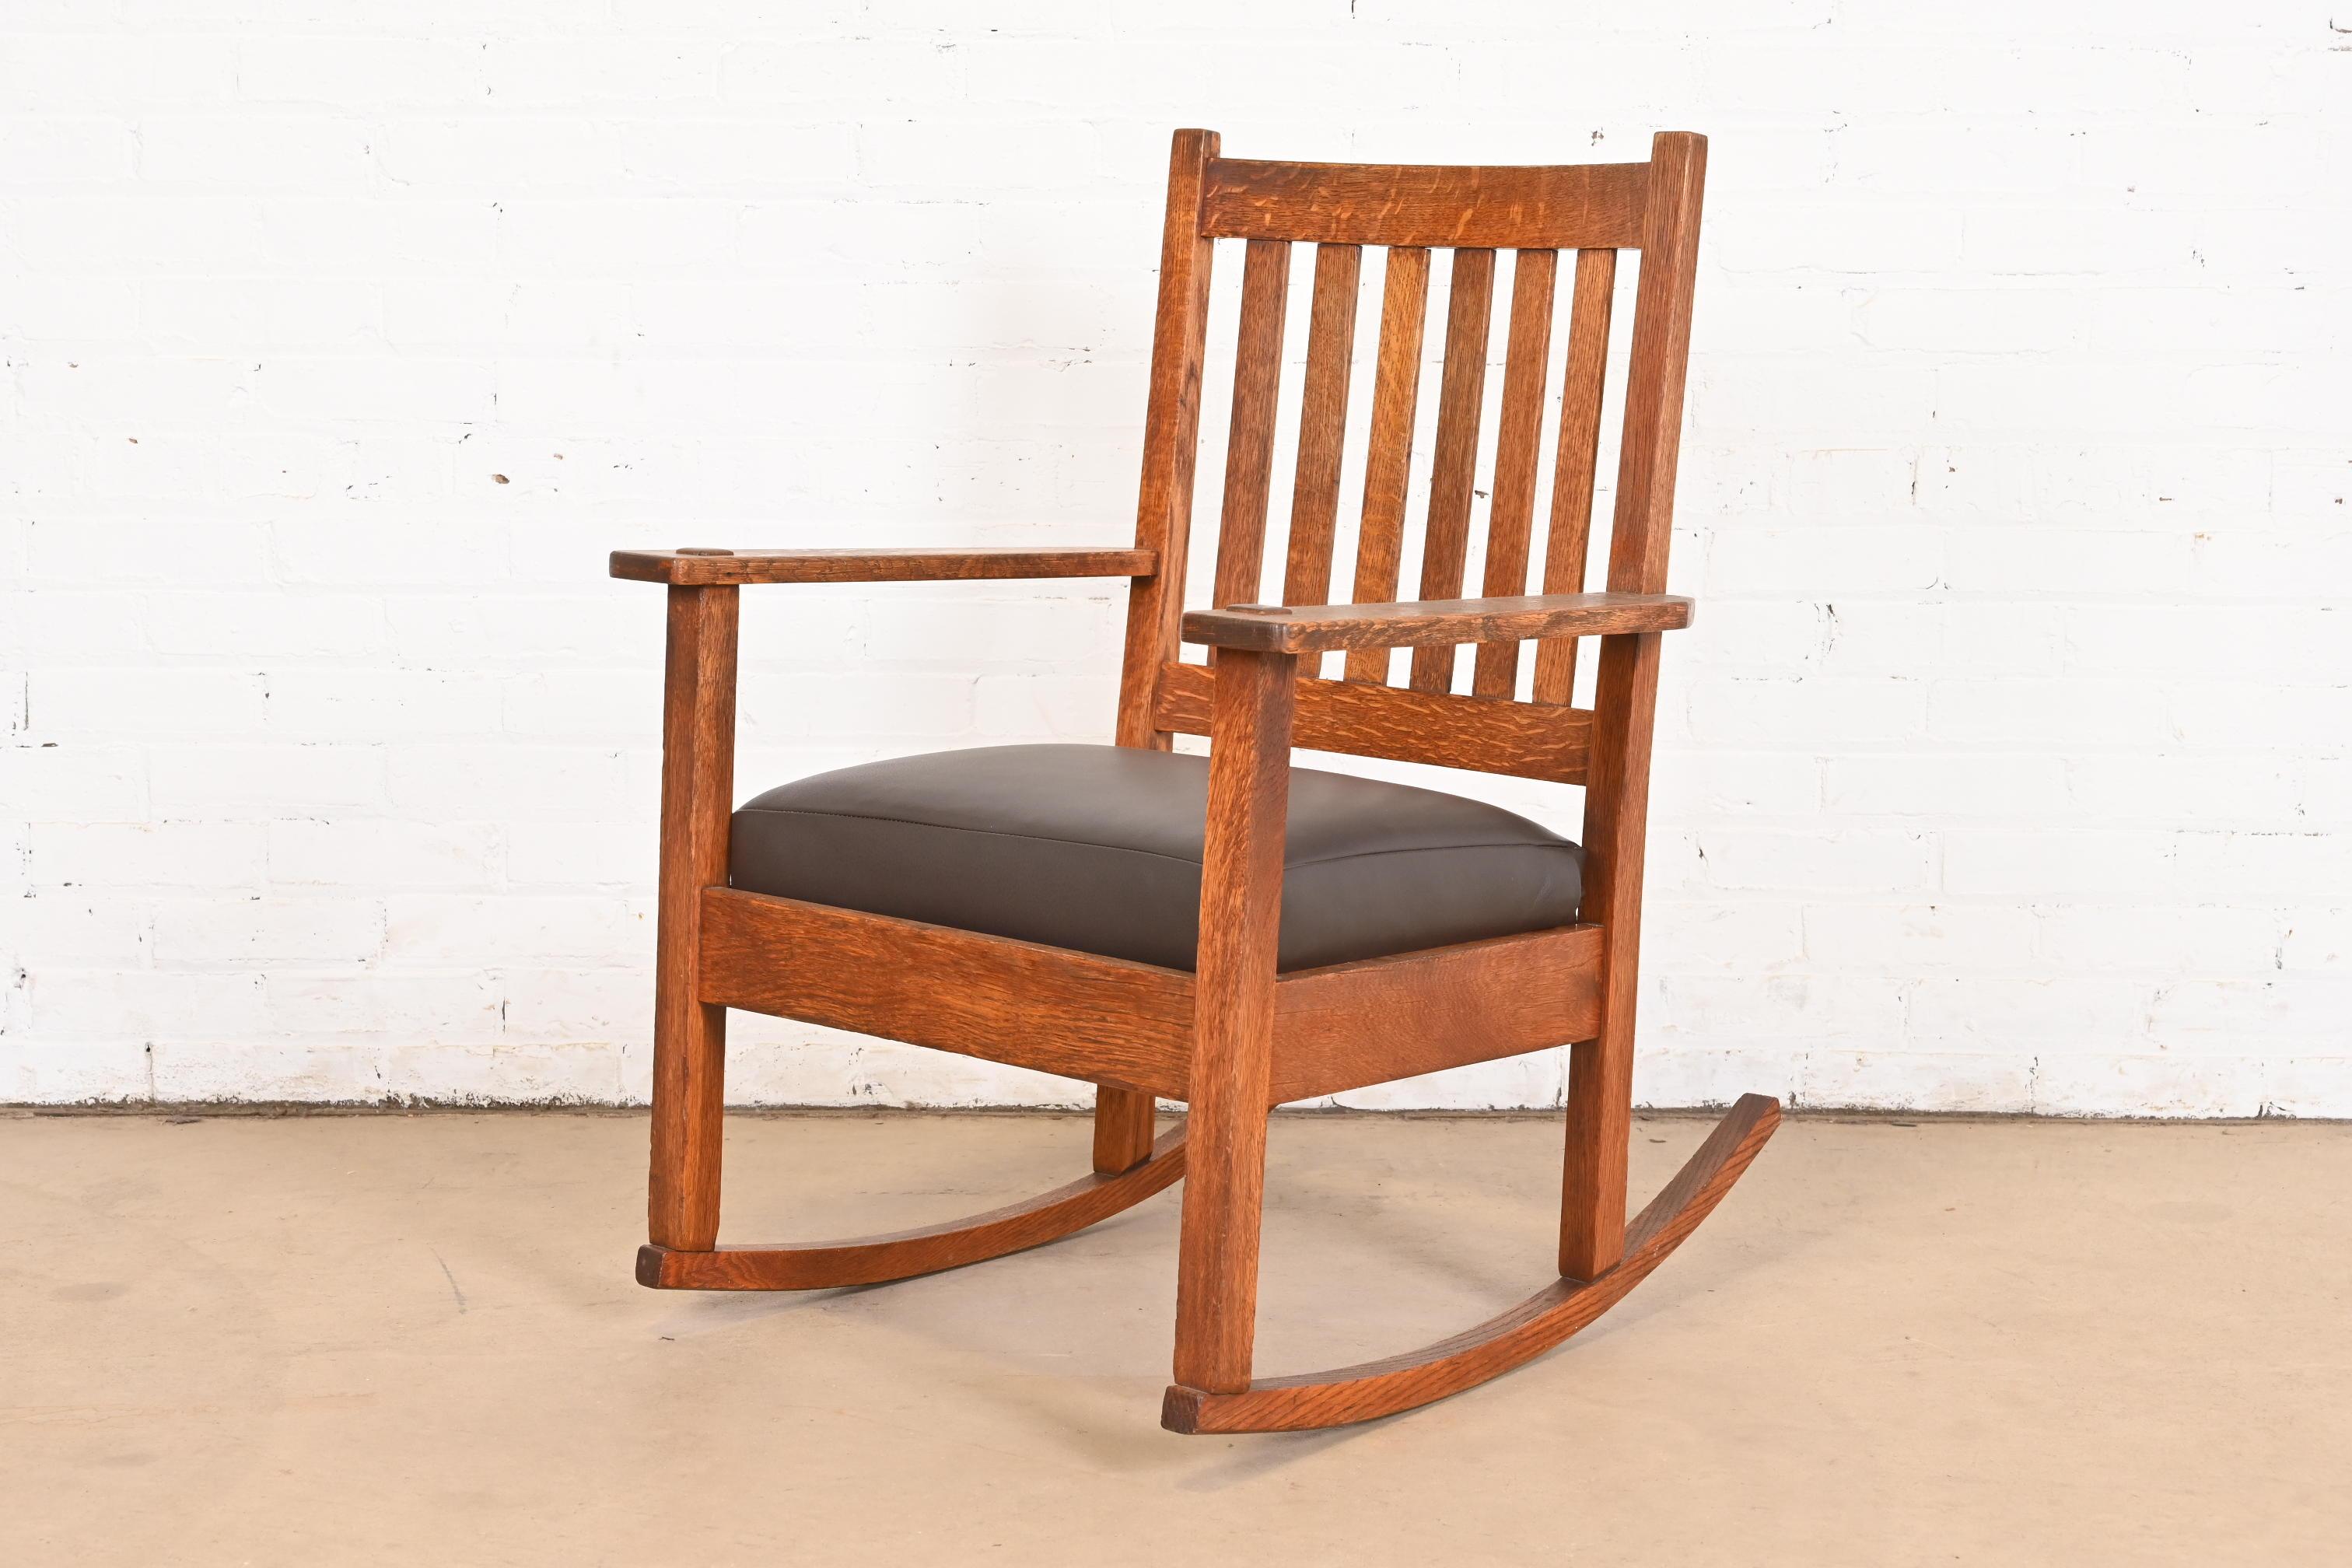 Un magnifique fauteuil à bascule Mission ou Arts & Crafts

Par Stickley Brothers

USA, Circa 1900

Chêne massif scié sur quartier, avec coussin d'assise en cuir marron récemment retapissé.

Dimensions : 25,5 